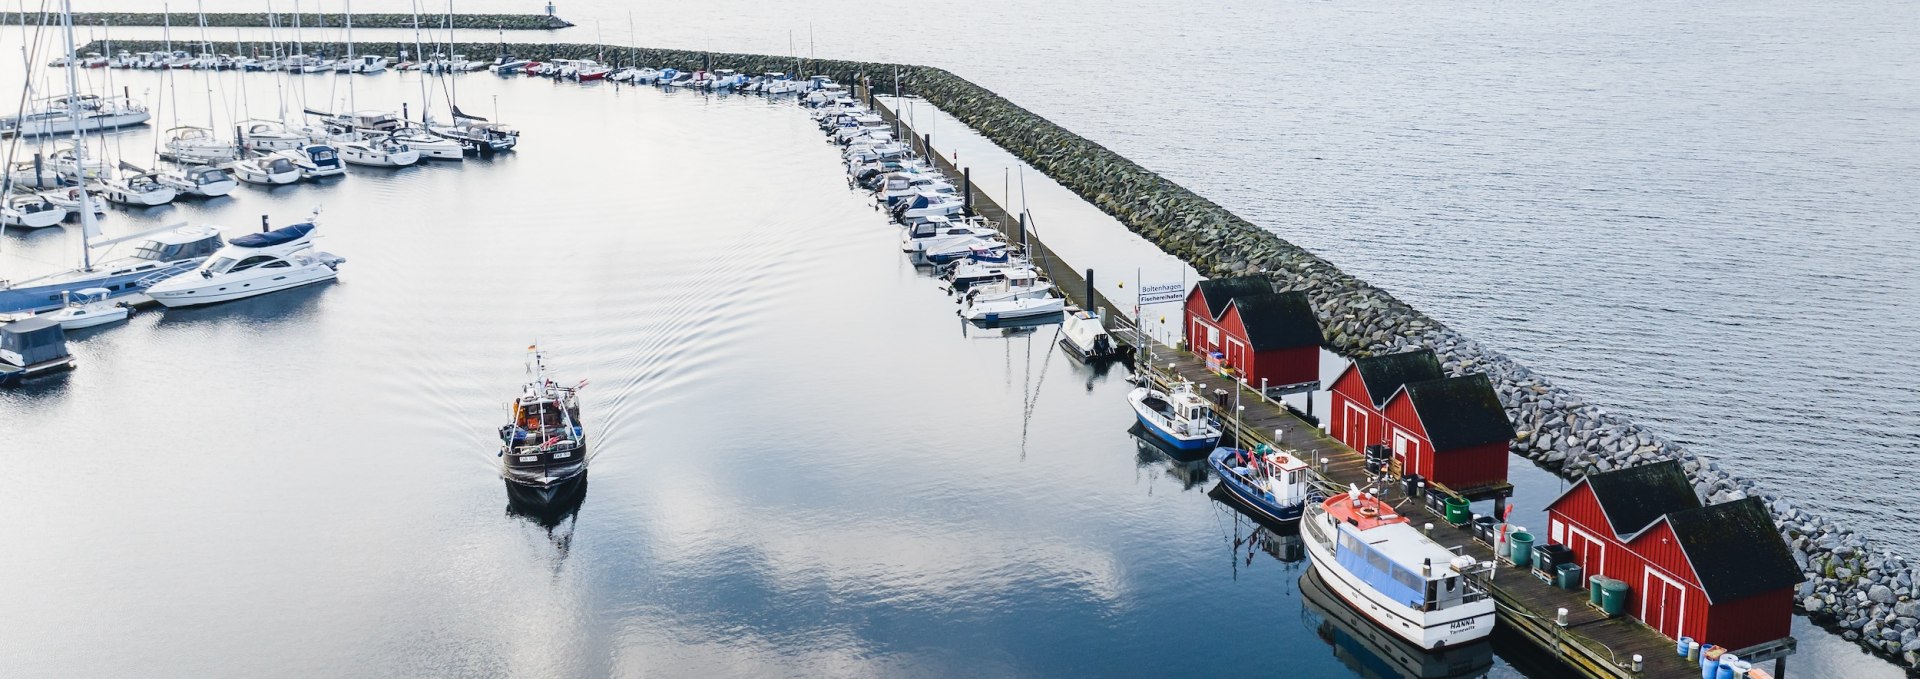 Bei der Ausfahrt aus dem Fischereihafen Boltenhagen passiert man die ikonischen roten Fischerschuppen, die sich hübsch in dem glatten Wasser des Hafenbeckens spiegeln., © TMV/Gross